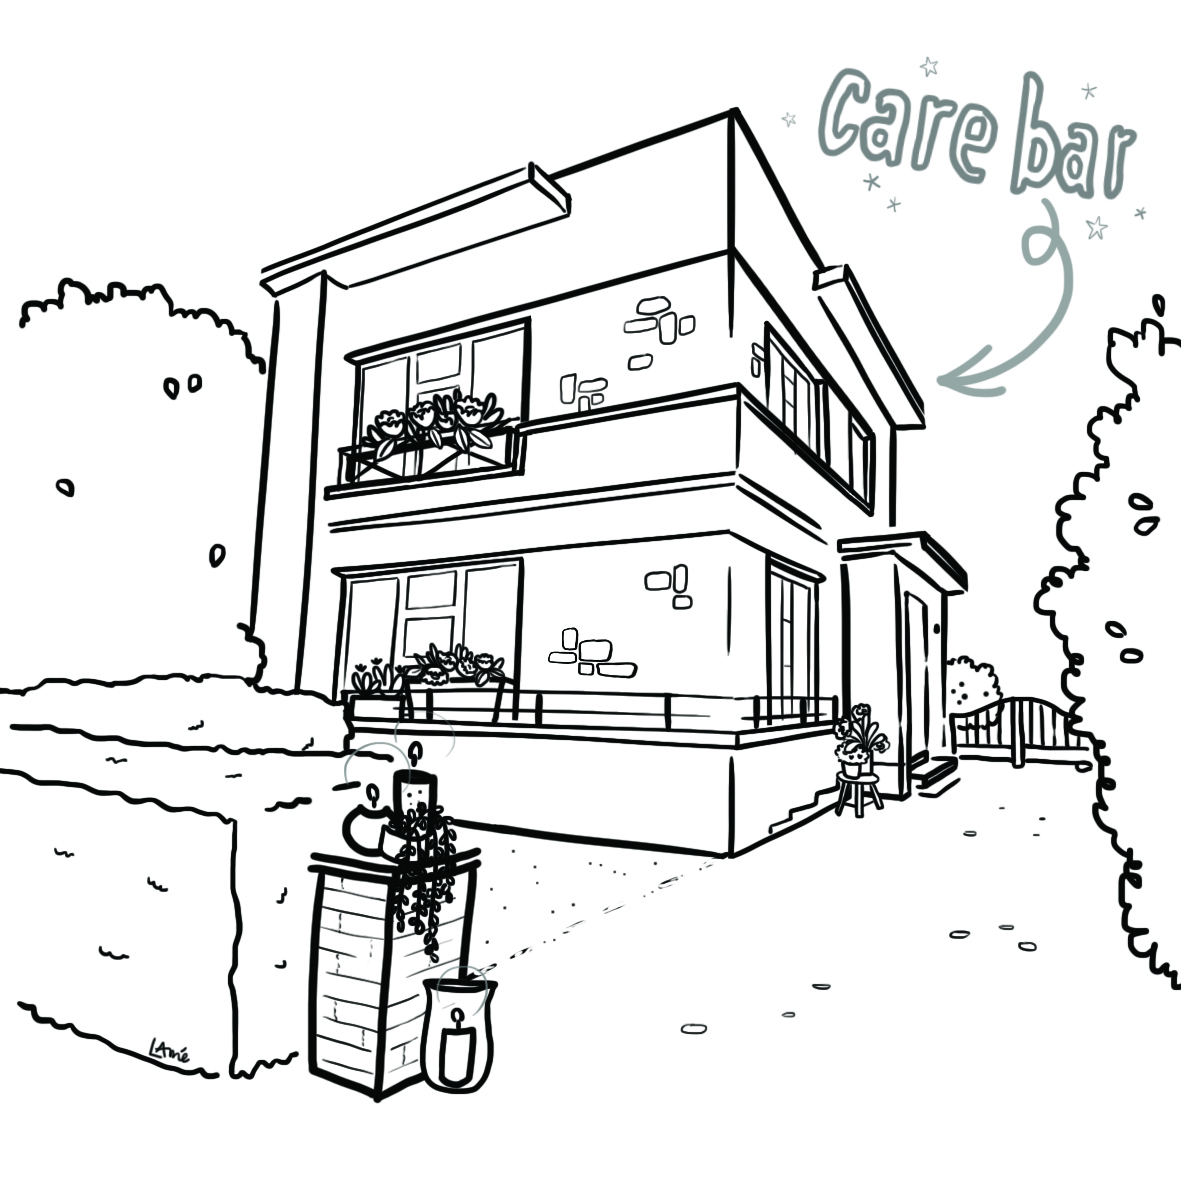 Care Bar